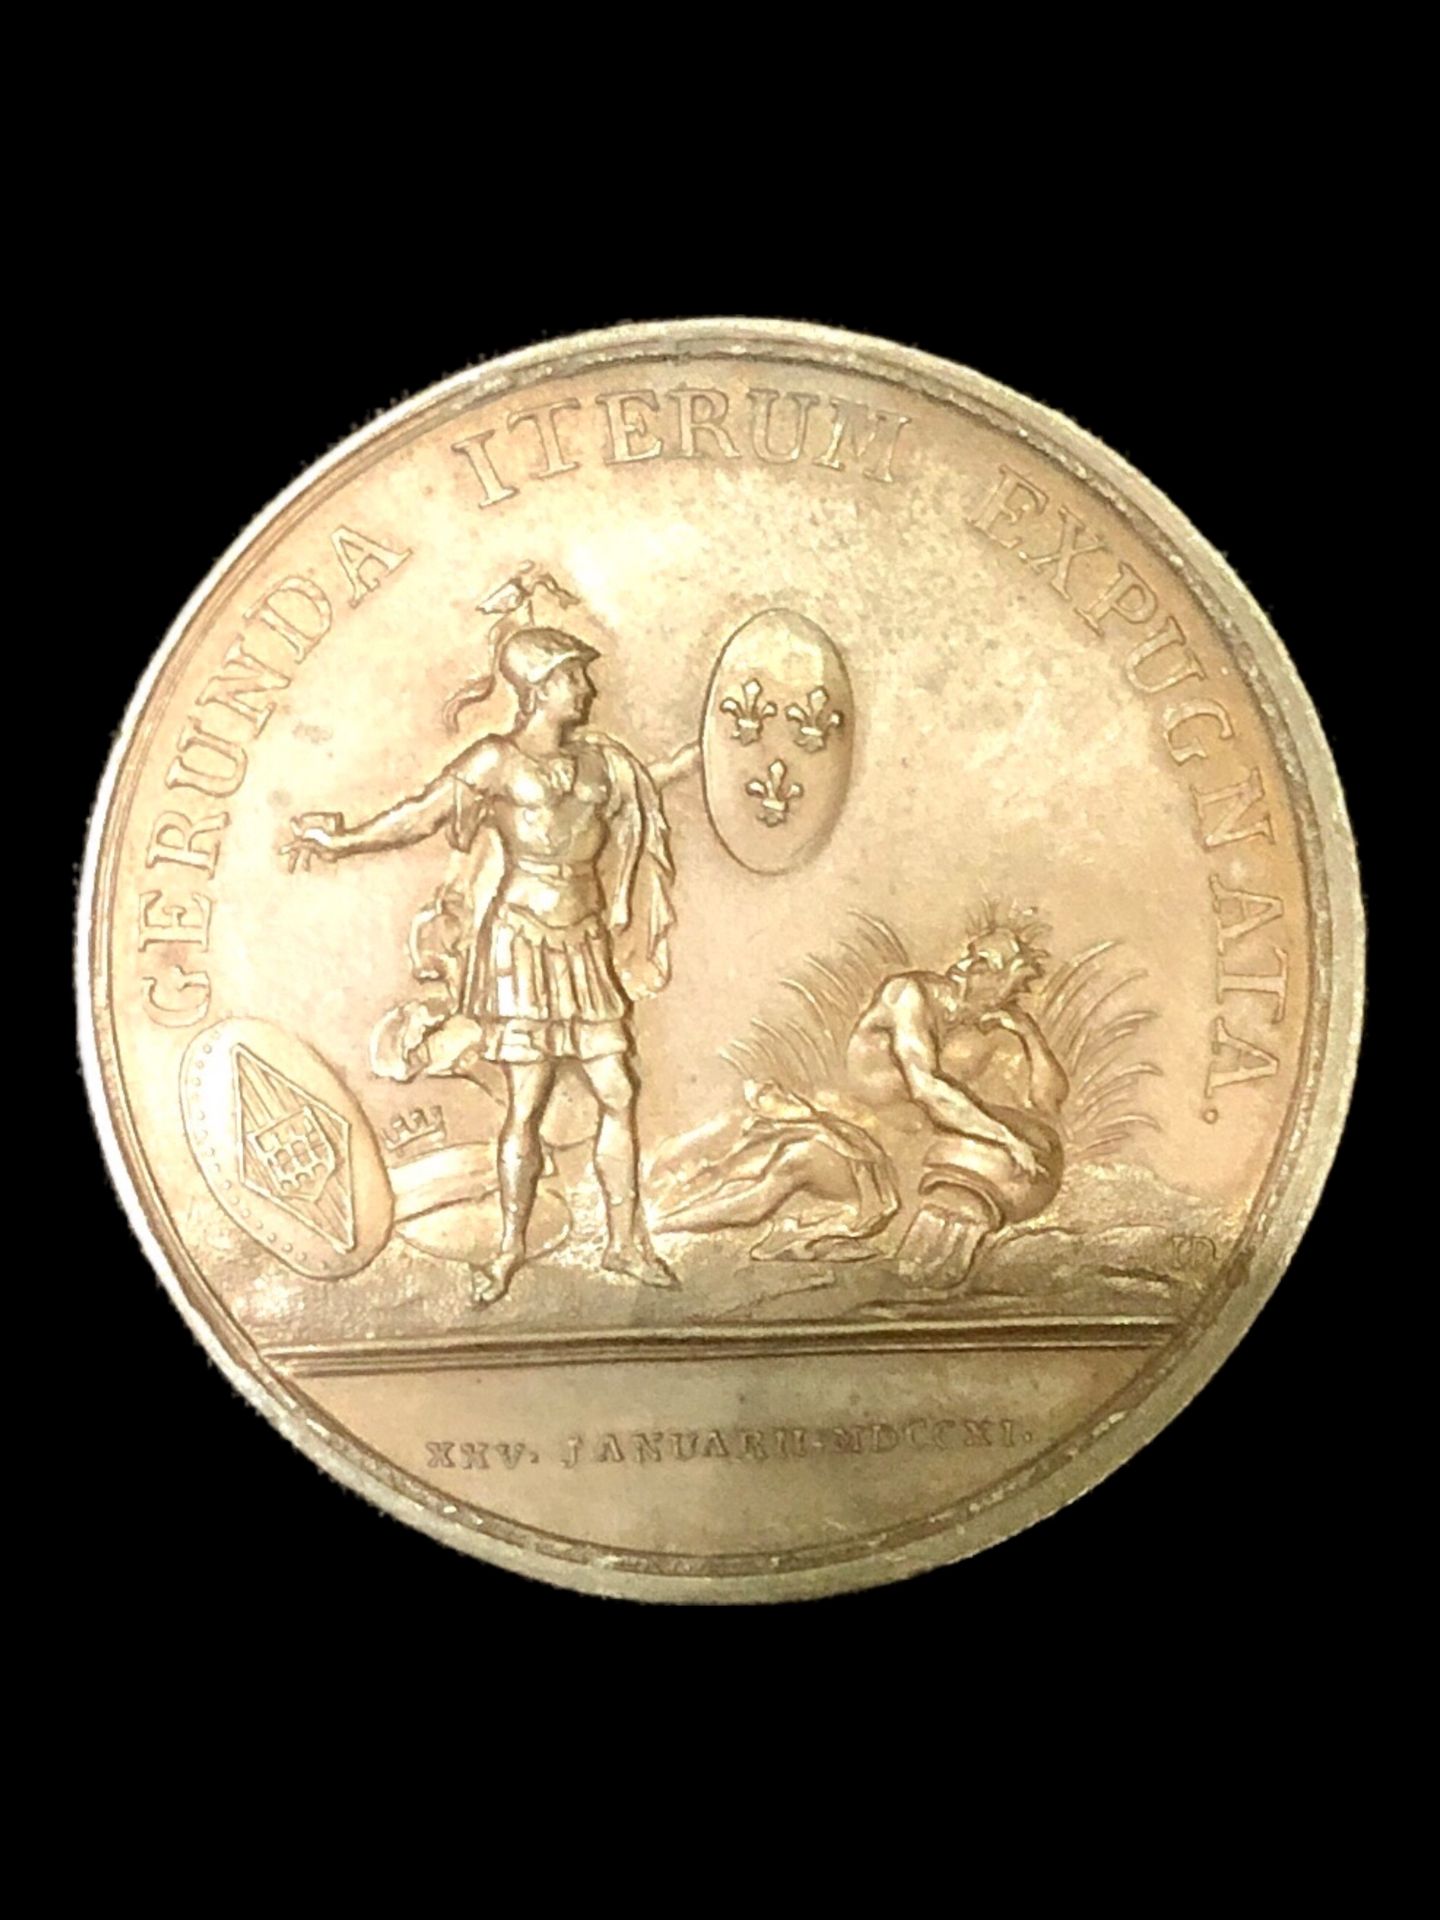 Null 纪念攻占赫罗纳的铜质奖章



A/路易十四，长卷发，头向右转/图例：LUDOVICUS MAGNUS REX CHRISTIANISSIMUS。

&hellip;